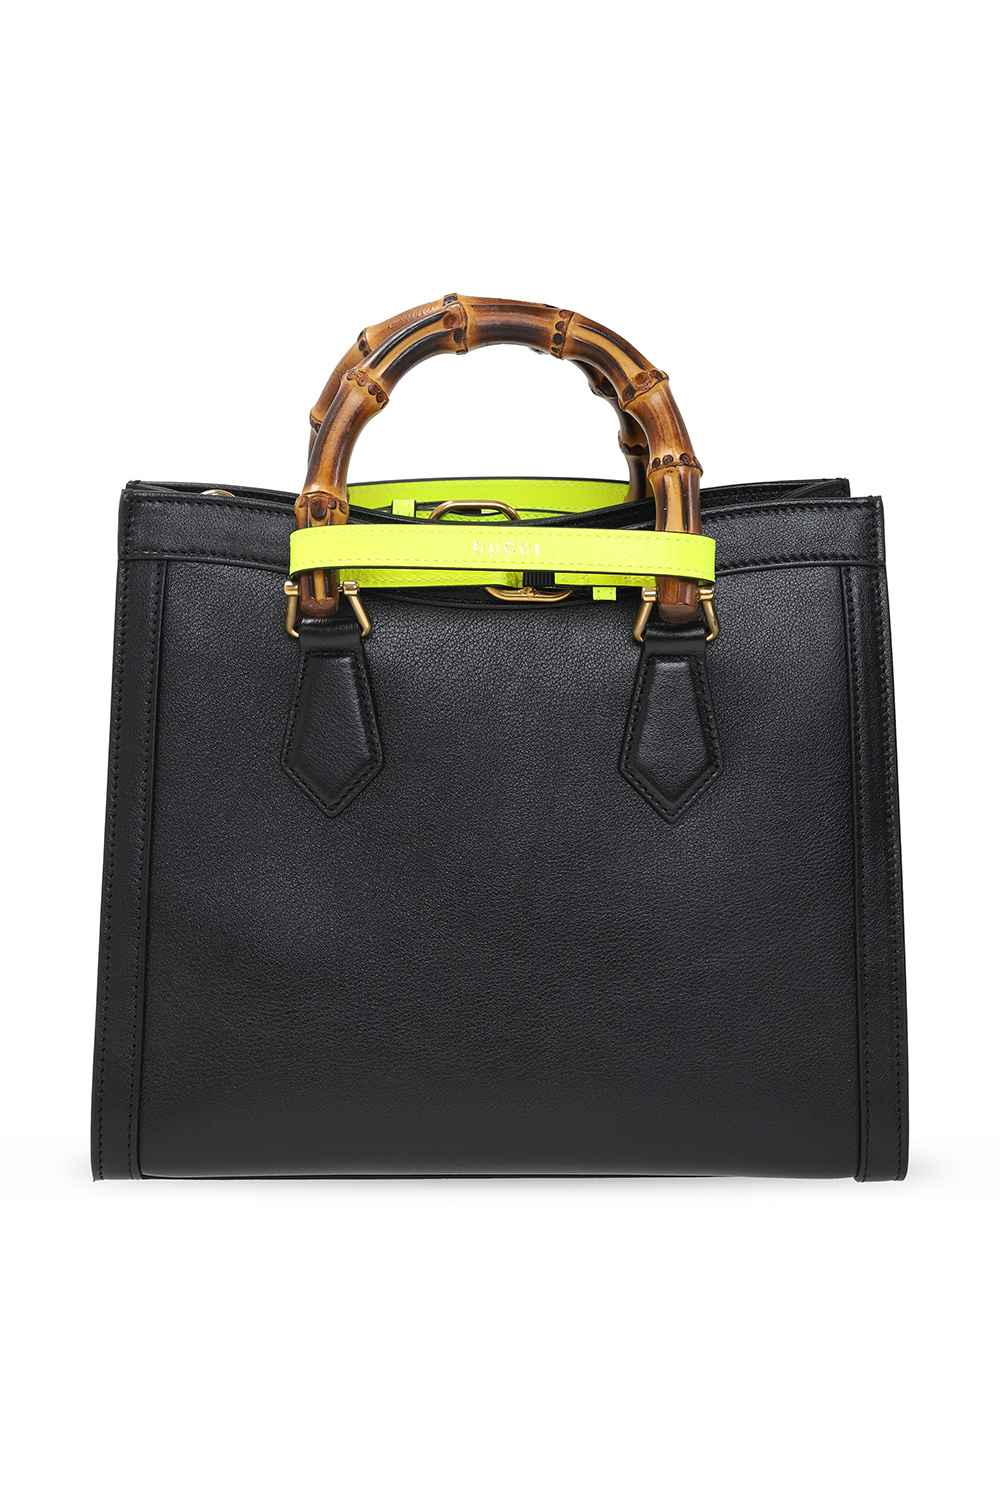 Gucci ‘Diana Small’ shoulder bag